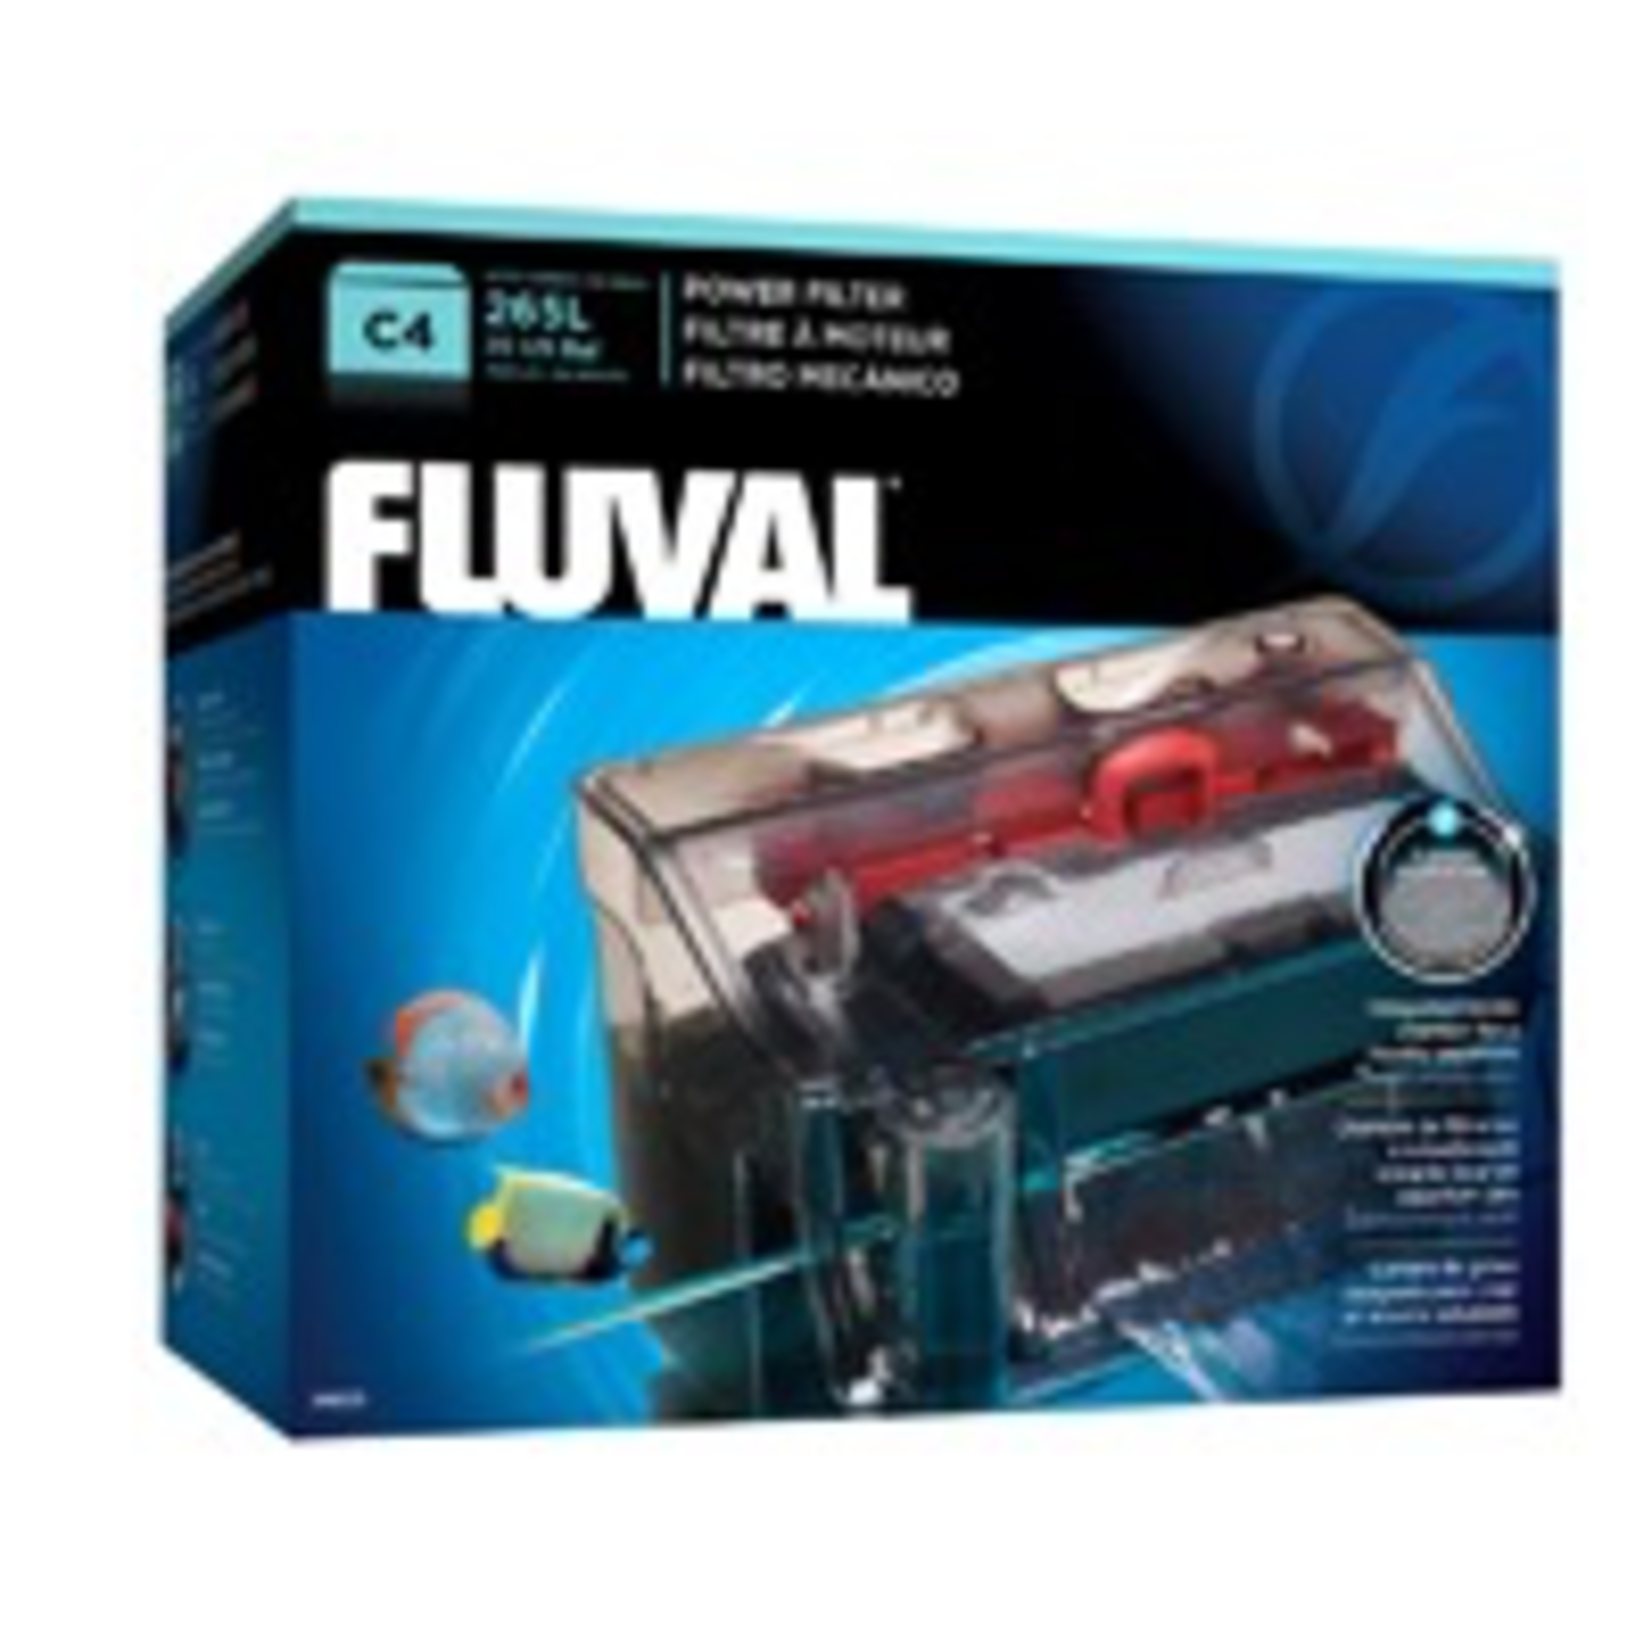 FLUVAL (W) Fluval C4 Power Filter